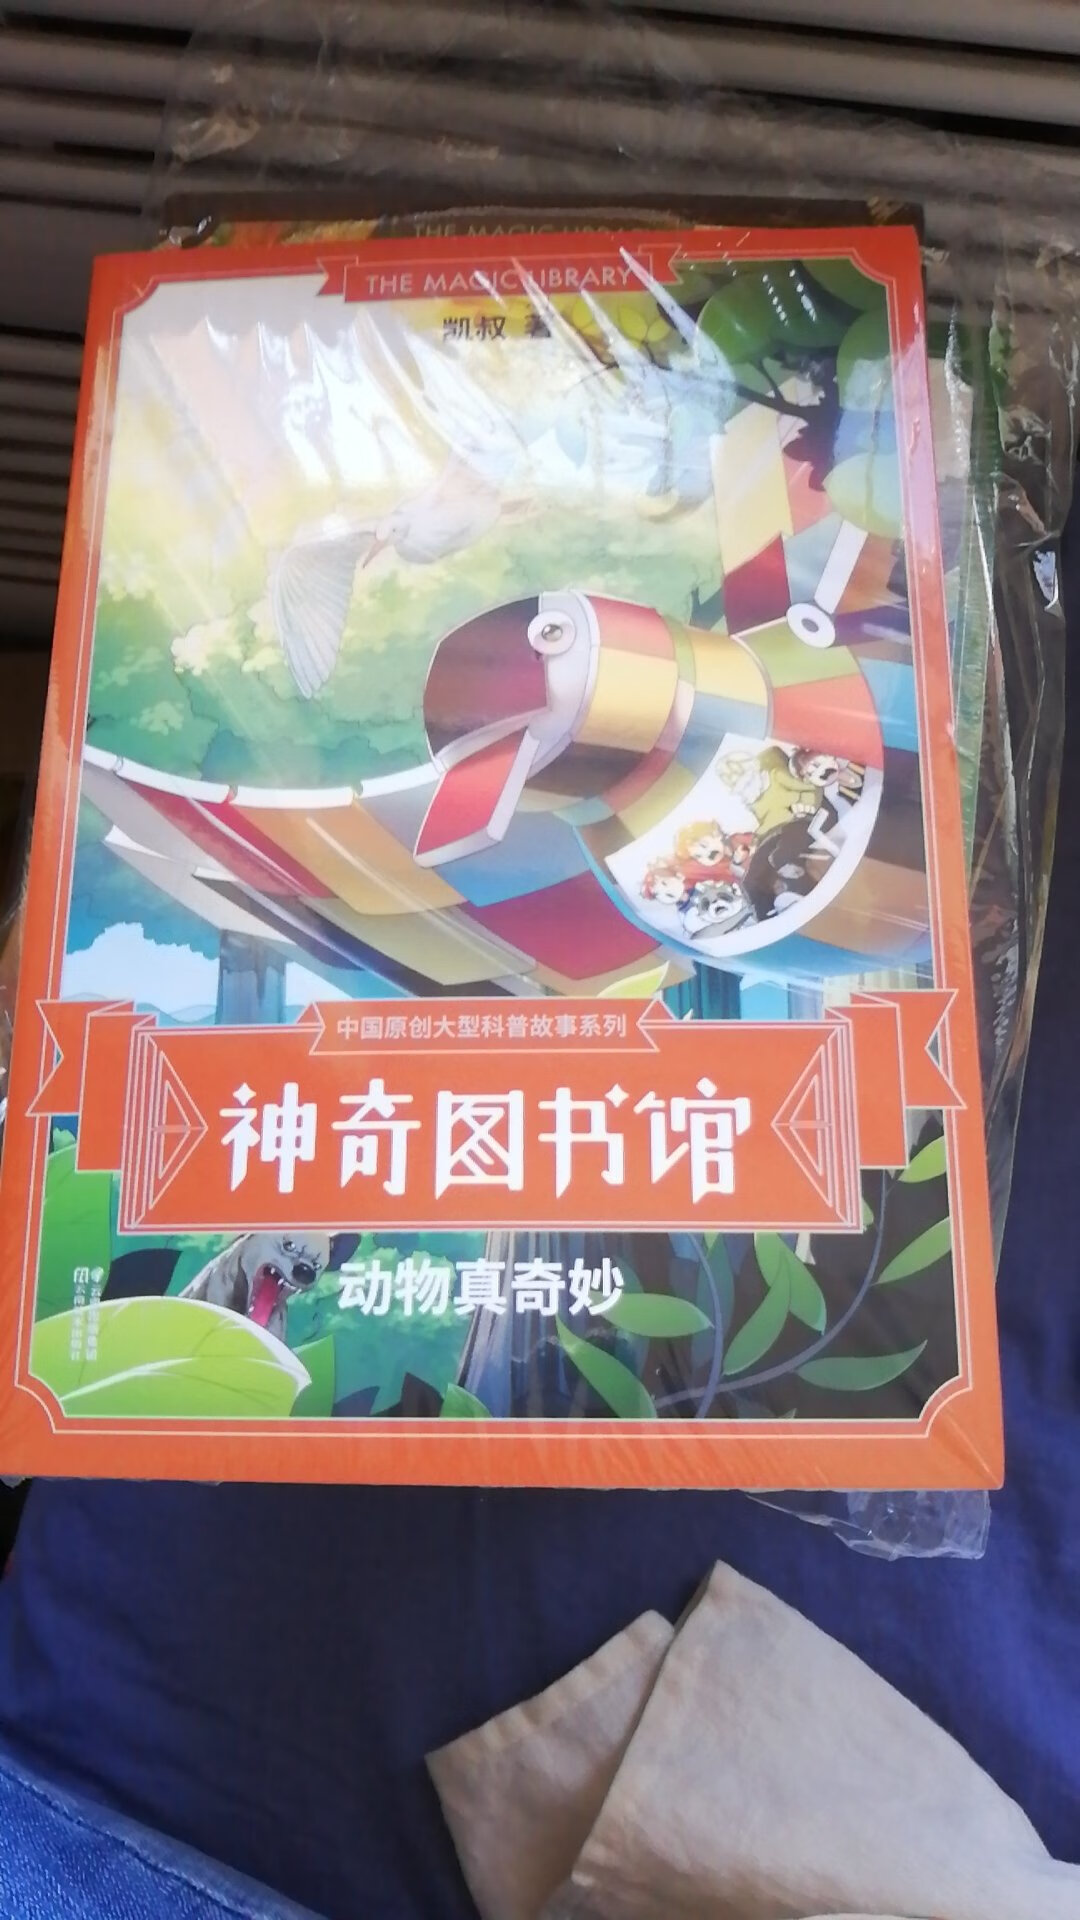 神奇图书馆这一段这一套书一共是一共是500，然后呢，每一版都是精美的包装，都是那个都有塑料包装纸包的吗？然后拆开了一本，写的非常非常的好，我还是比较喜欢看，嗯，确实像是一本儿，嗯，神奇校车的中国版